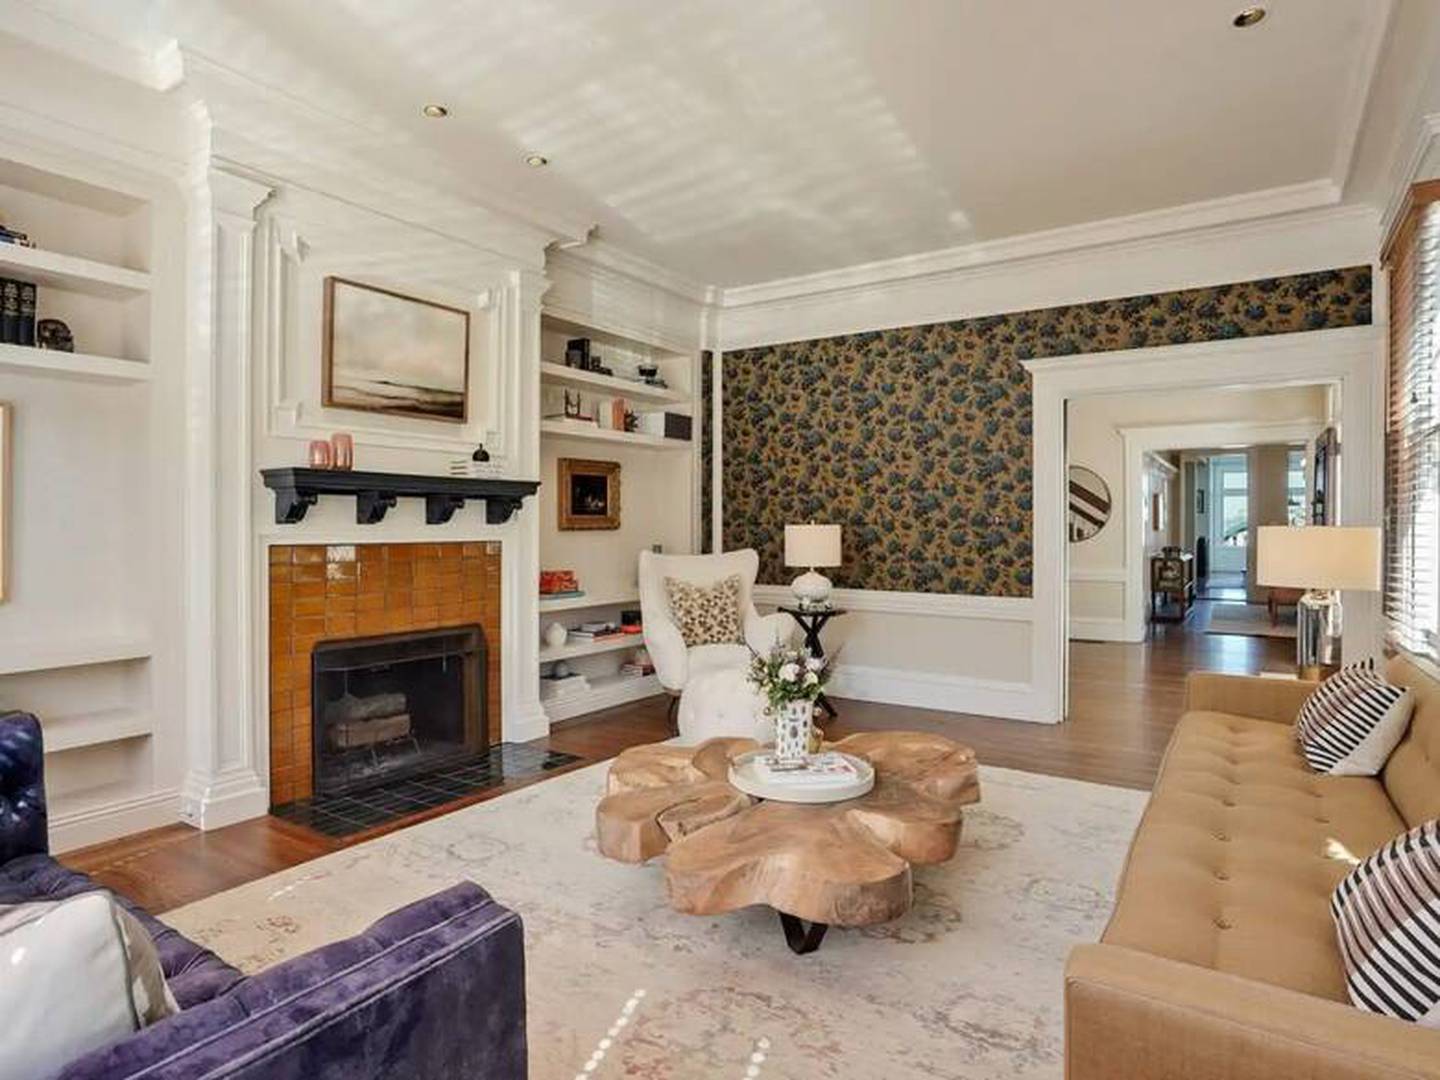 Uno de los salones de la casa de Julia Roberts tiene chimenea y paredes tapizadas. Foto: Sotheby's International Realty